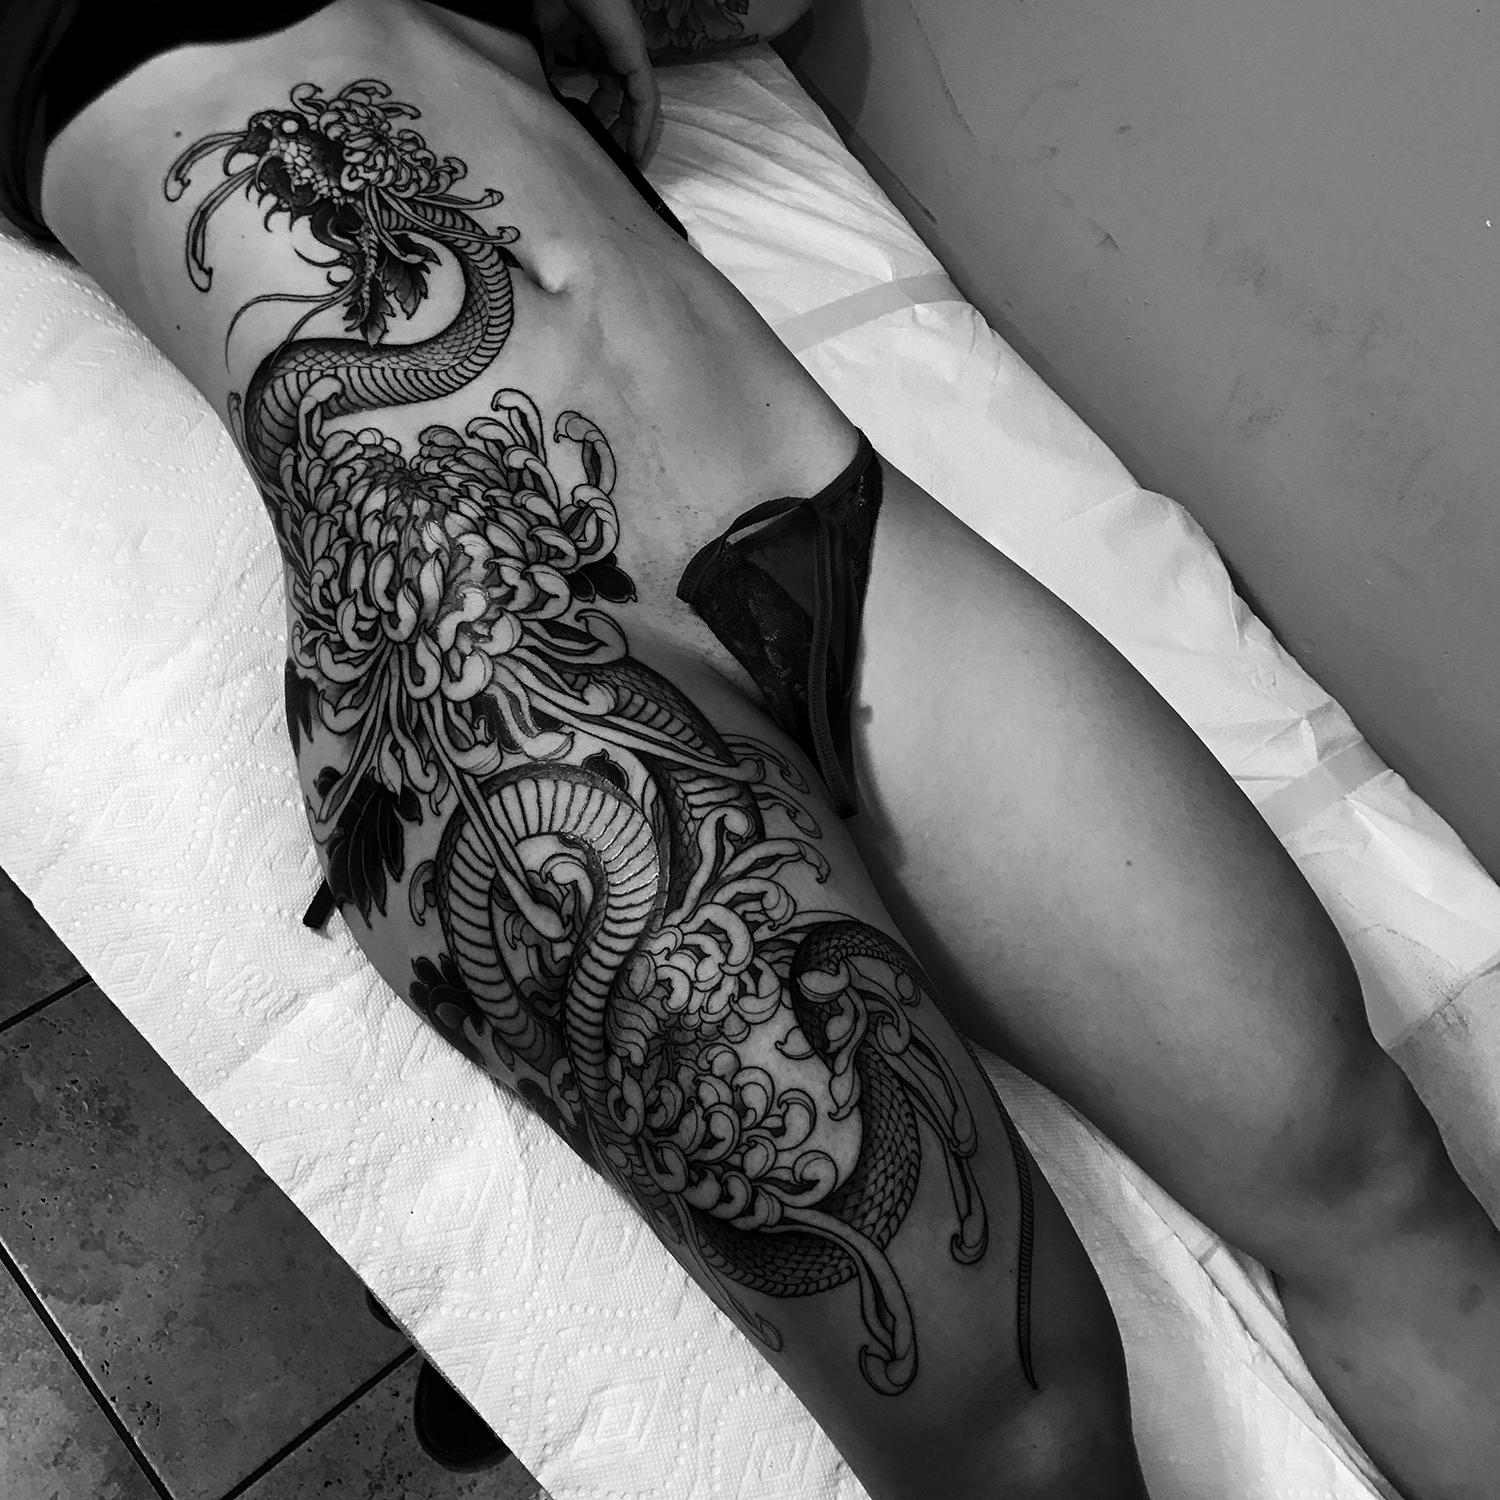 Joao Bosco - snake body tattoo